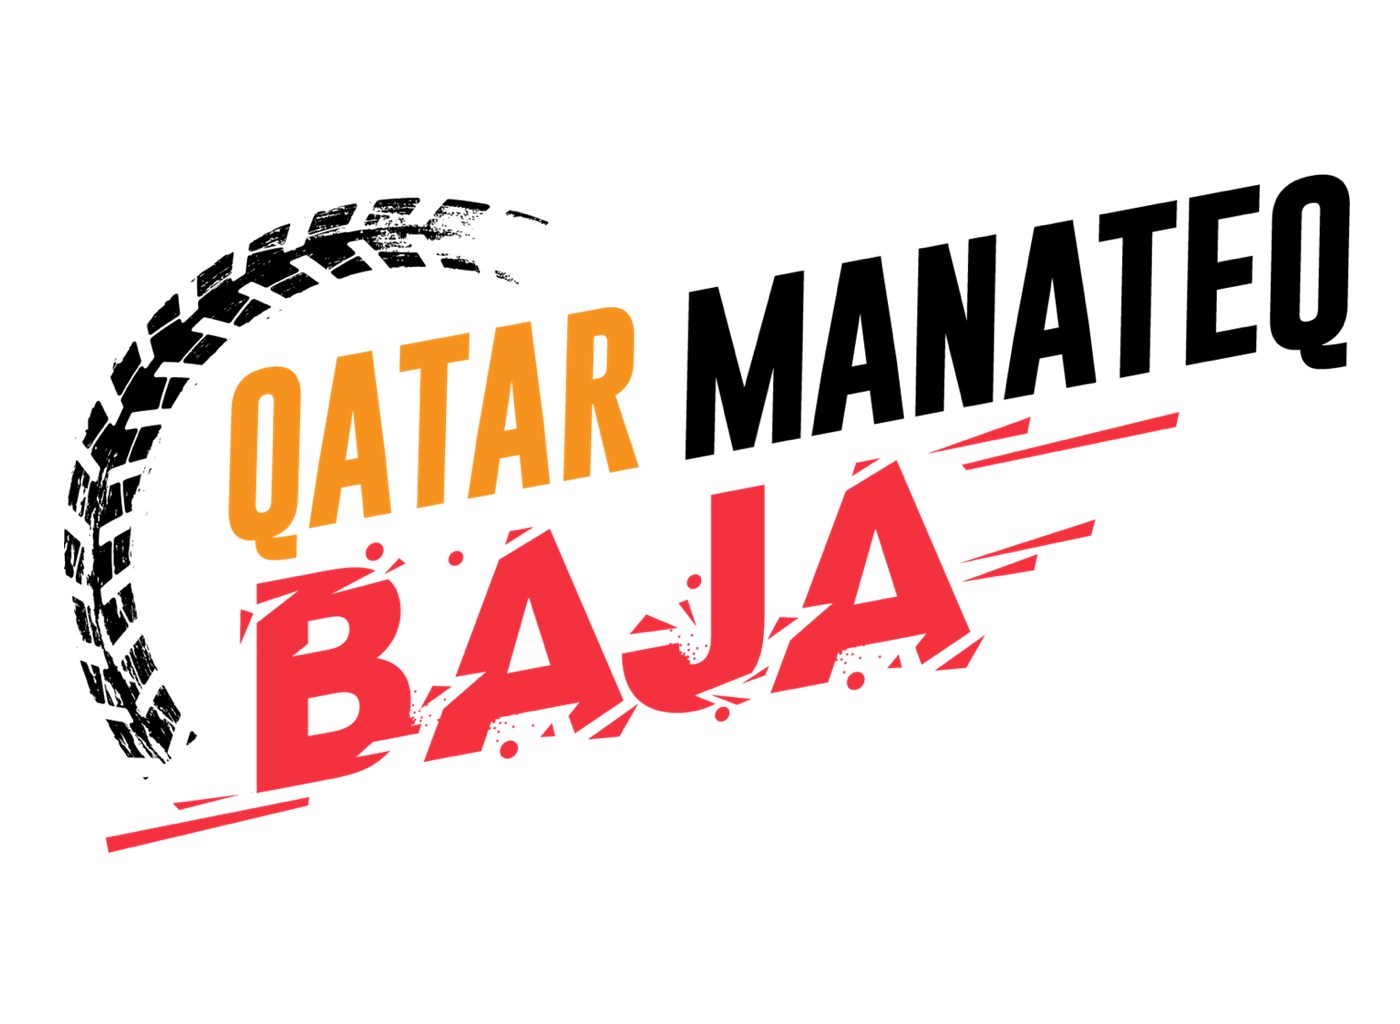 Baja Logo - Qatar Manateq Baja